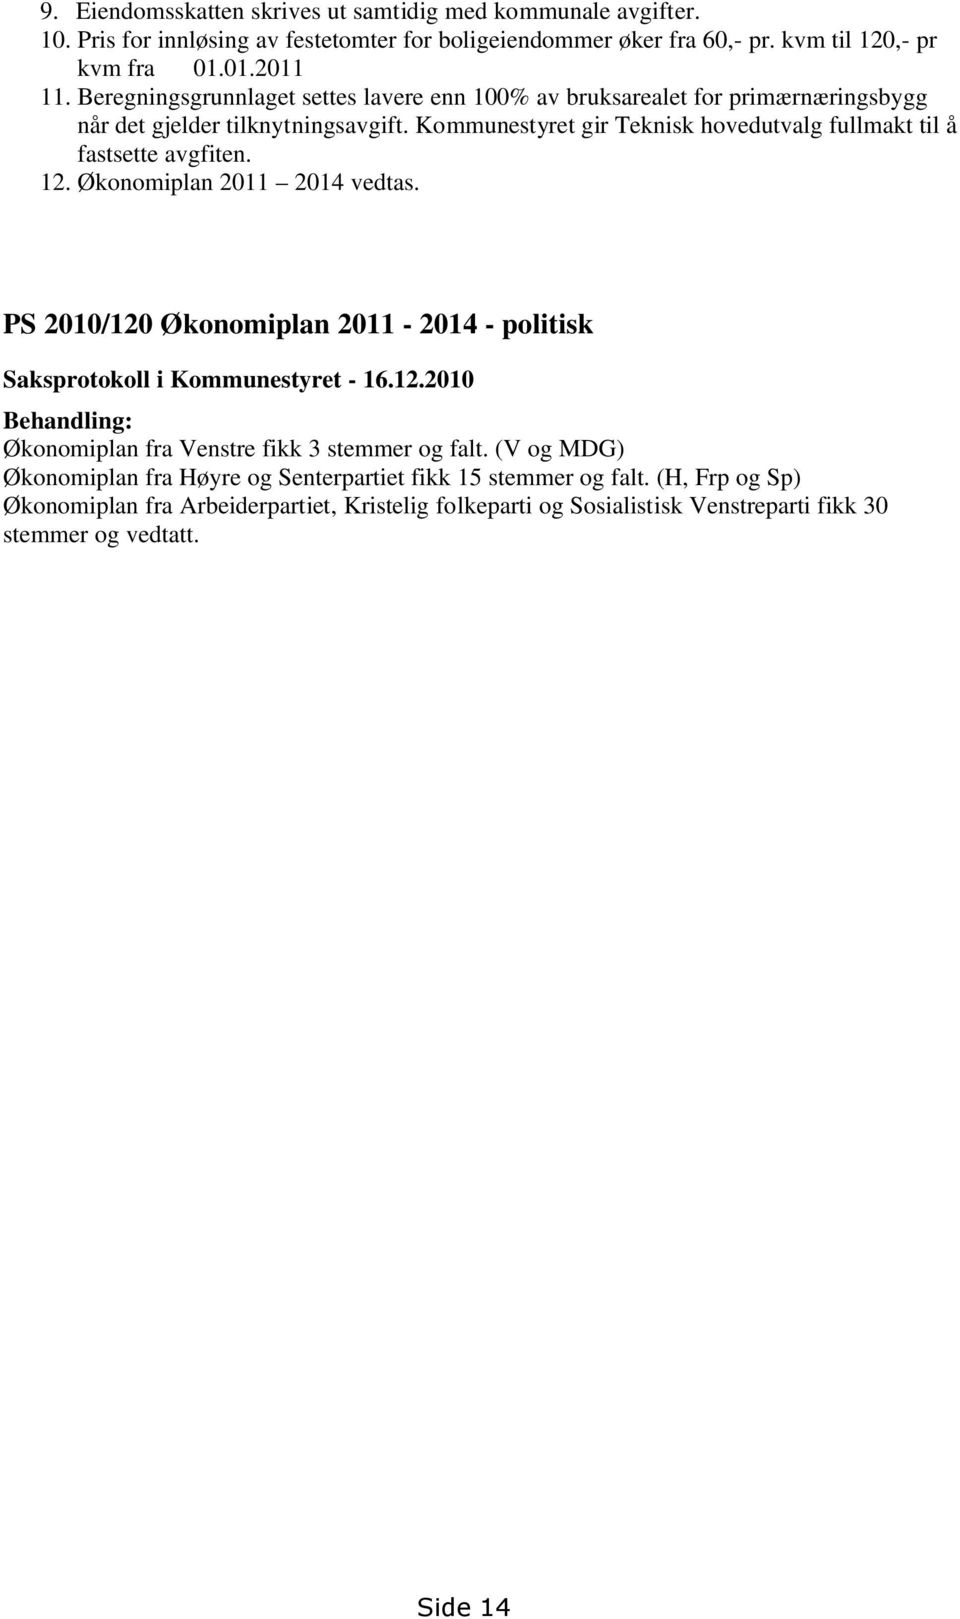 12. Økonomiplan 2011 2014 vedtas. PS 2010/120 Økonomiplan 2011-2014 - politisk Saksprotokoll i Kommunestyret - 16.12.2010 Behandling: Økonomiplan fra Venstre fikk 3 stemmer og falt.